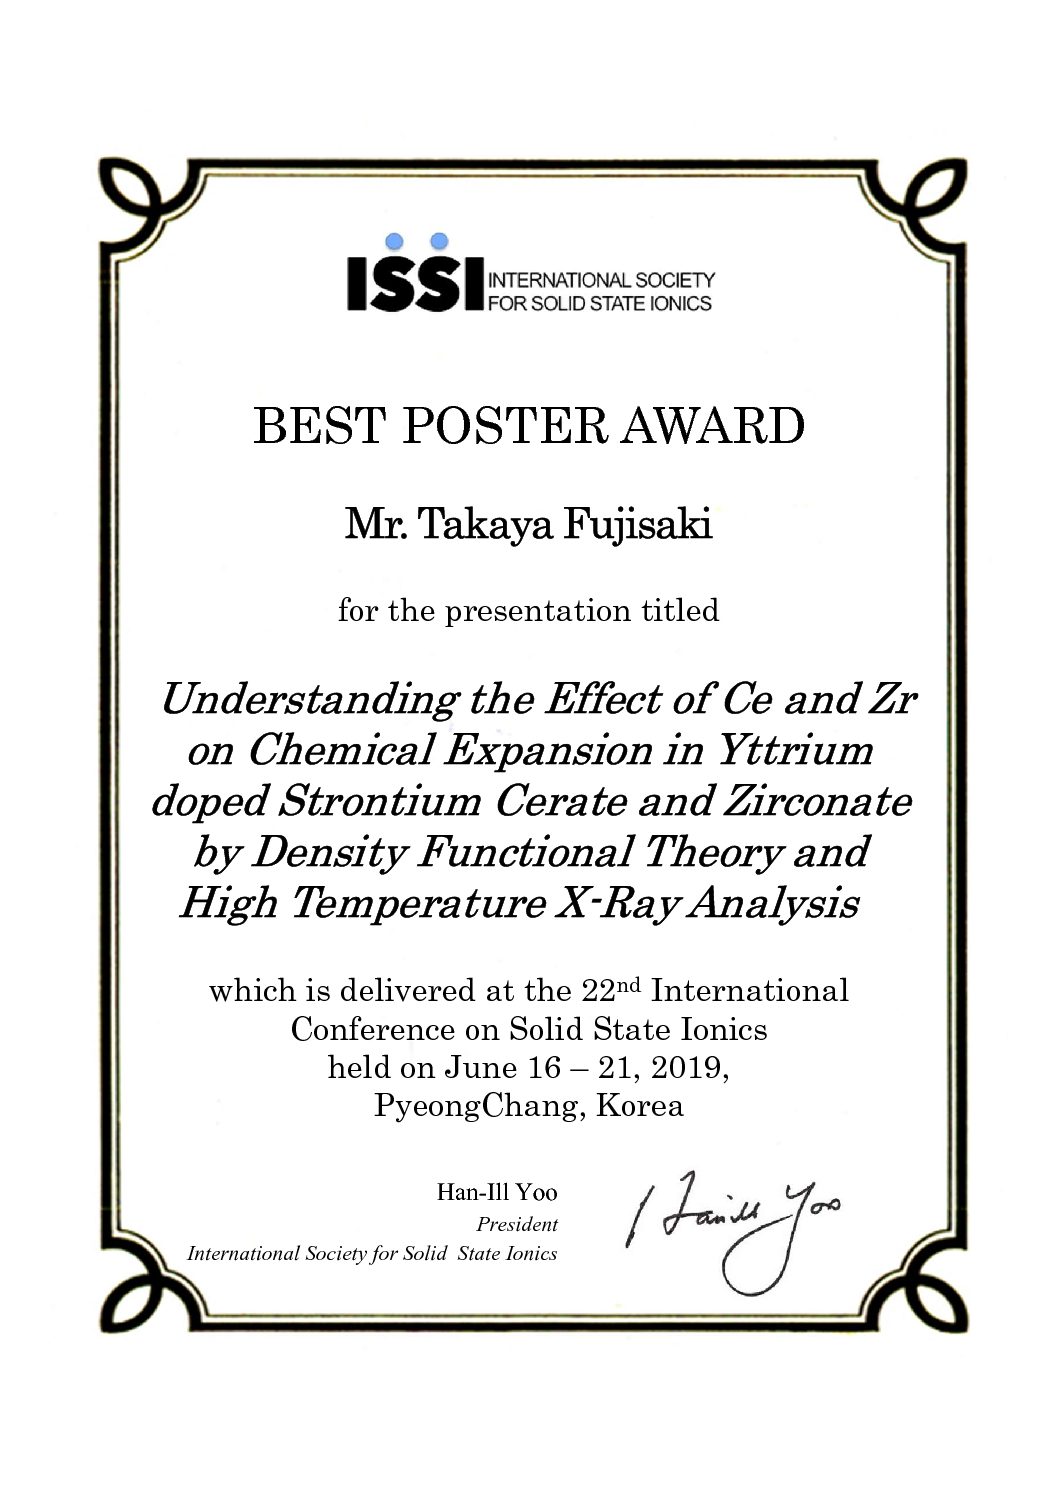 藤崎貴也研究員が22nd International Conference on Solid State Ionics (SSI-22)にてポスター賞を受賞しました。